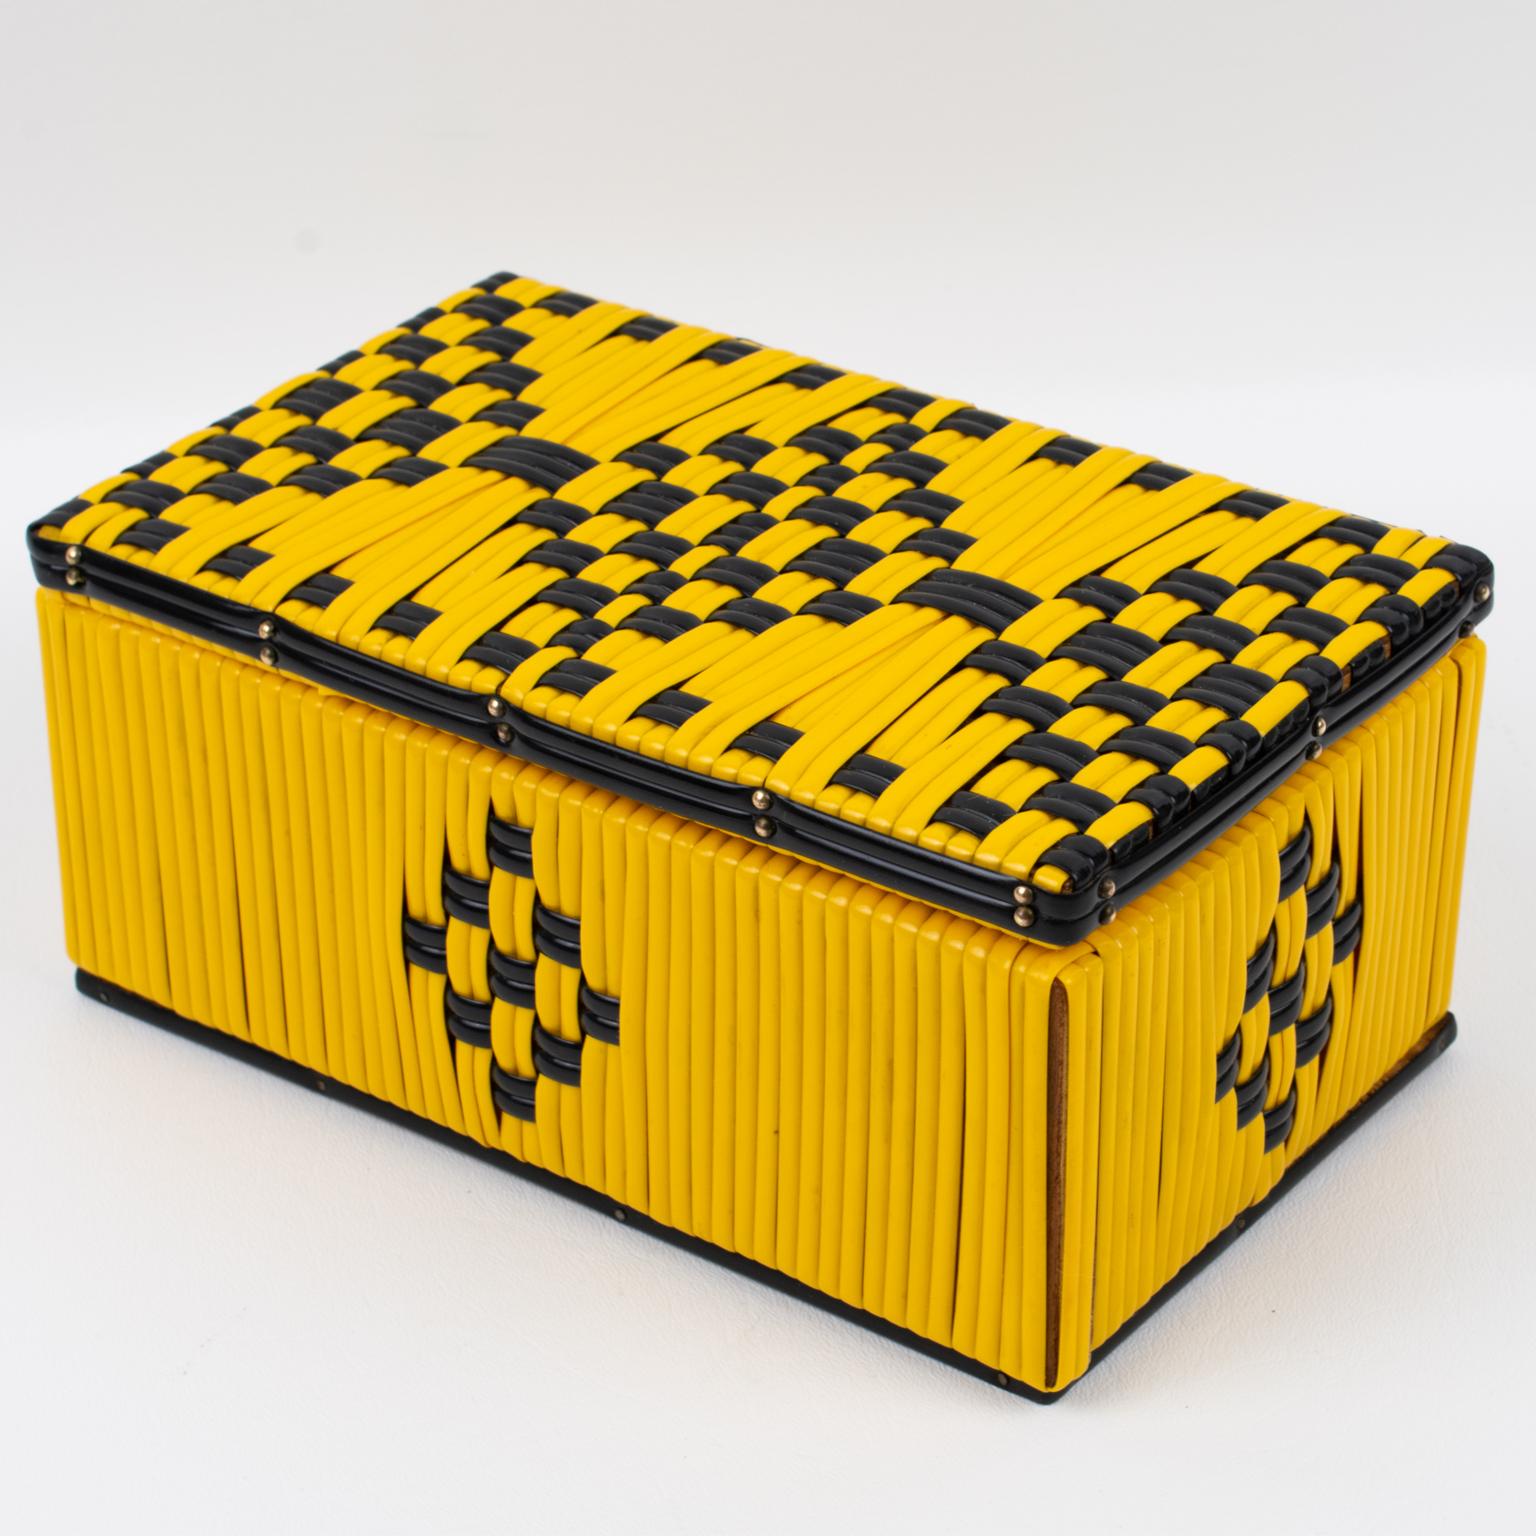 Cette jolie boîte à couvercle décorative française des années 1950 est ornée d'un scoubidou en plastique vinyle jaune vif avec un fil de contraste noir. La boîte arbore un superbe motif géométrique sur toutes ses faces. Il n'y a pas de marque de